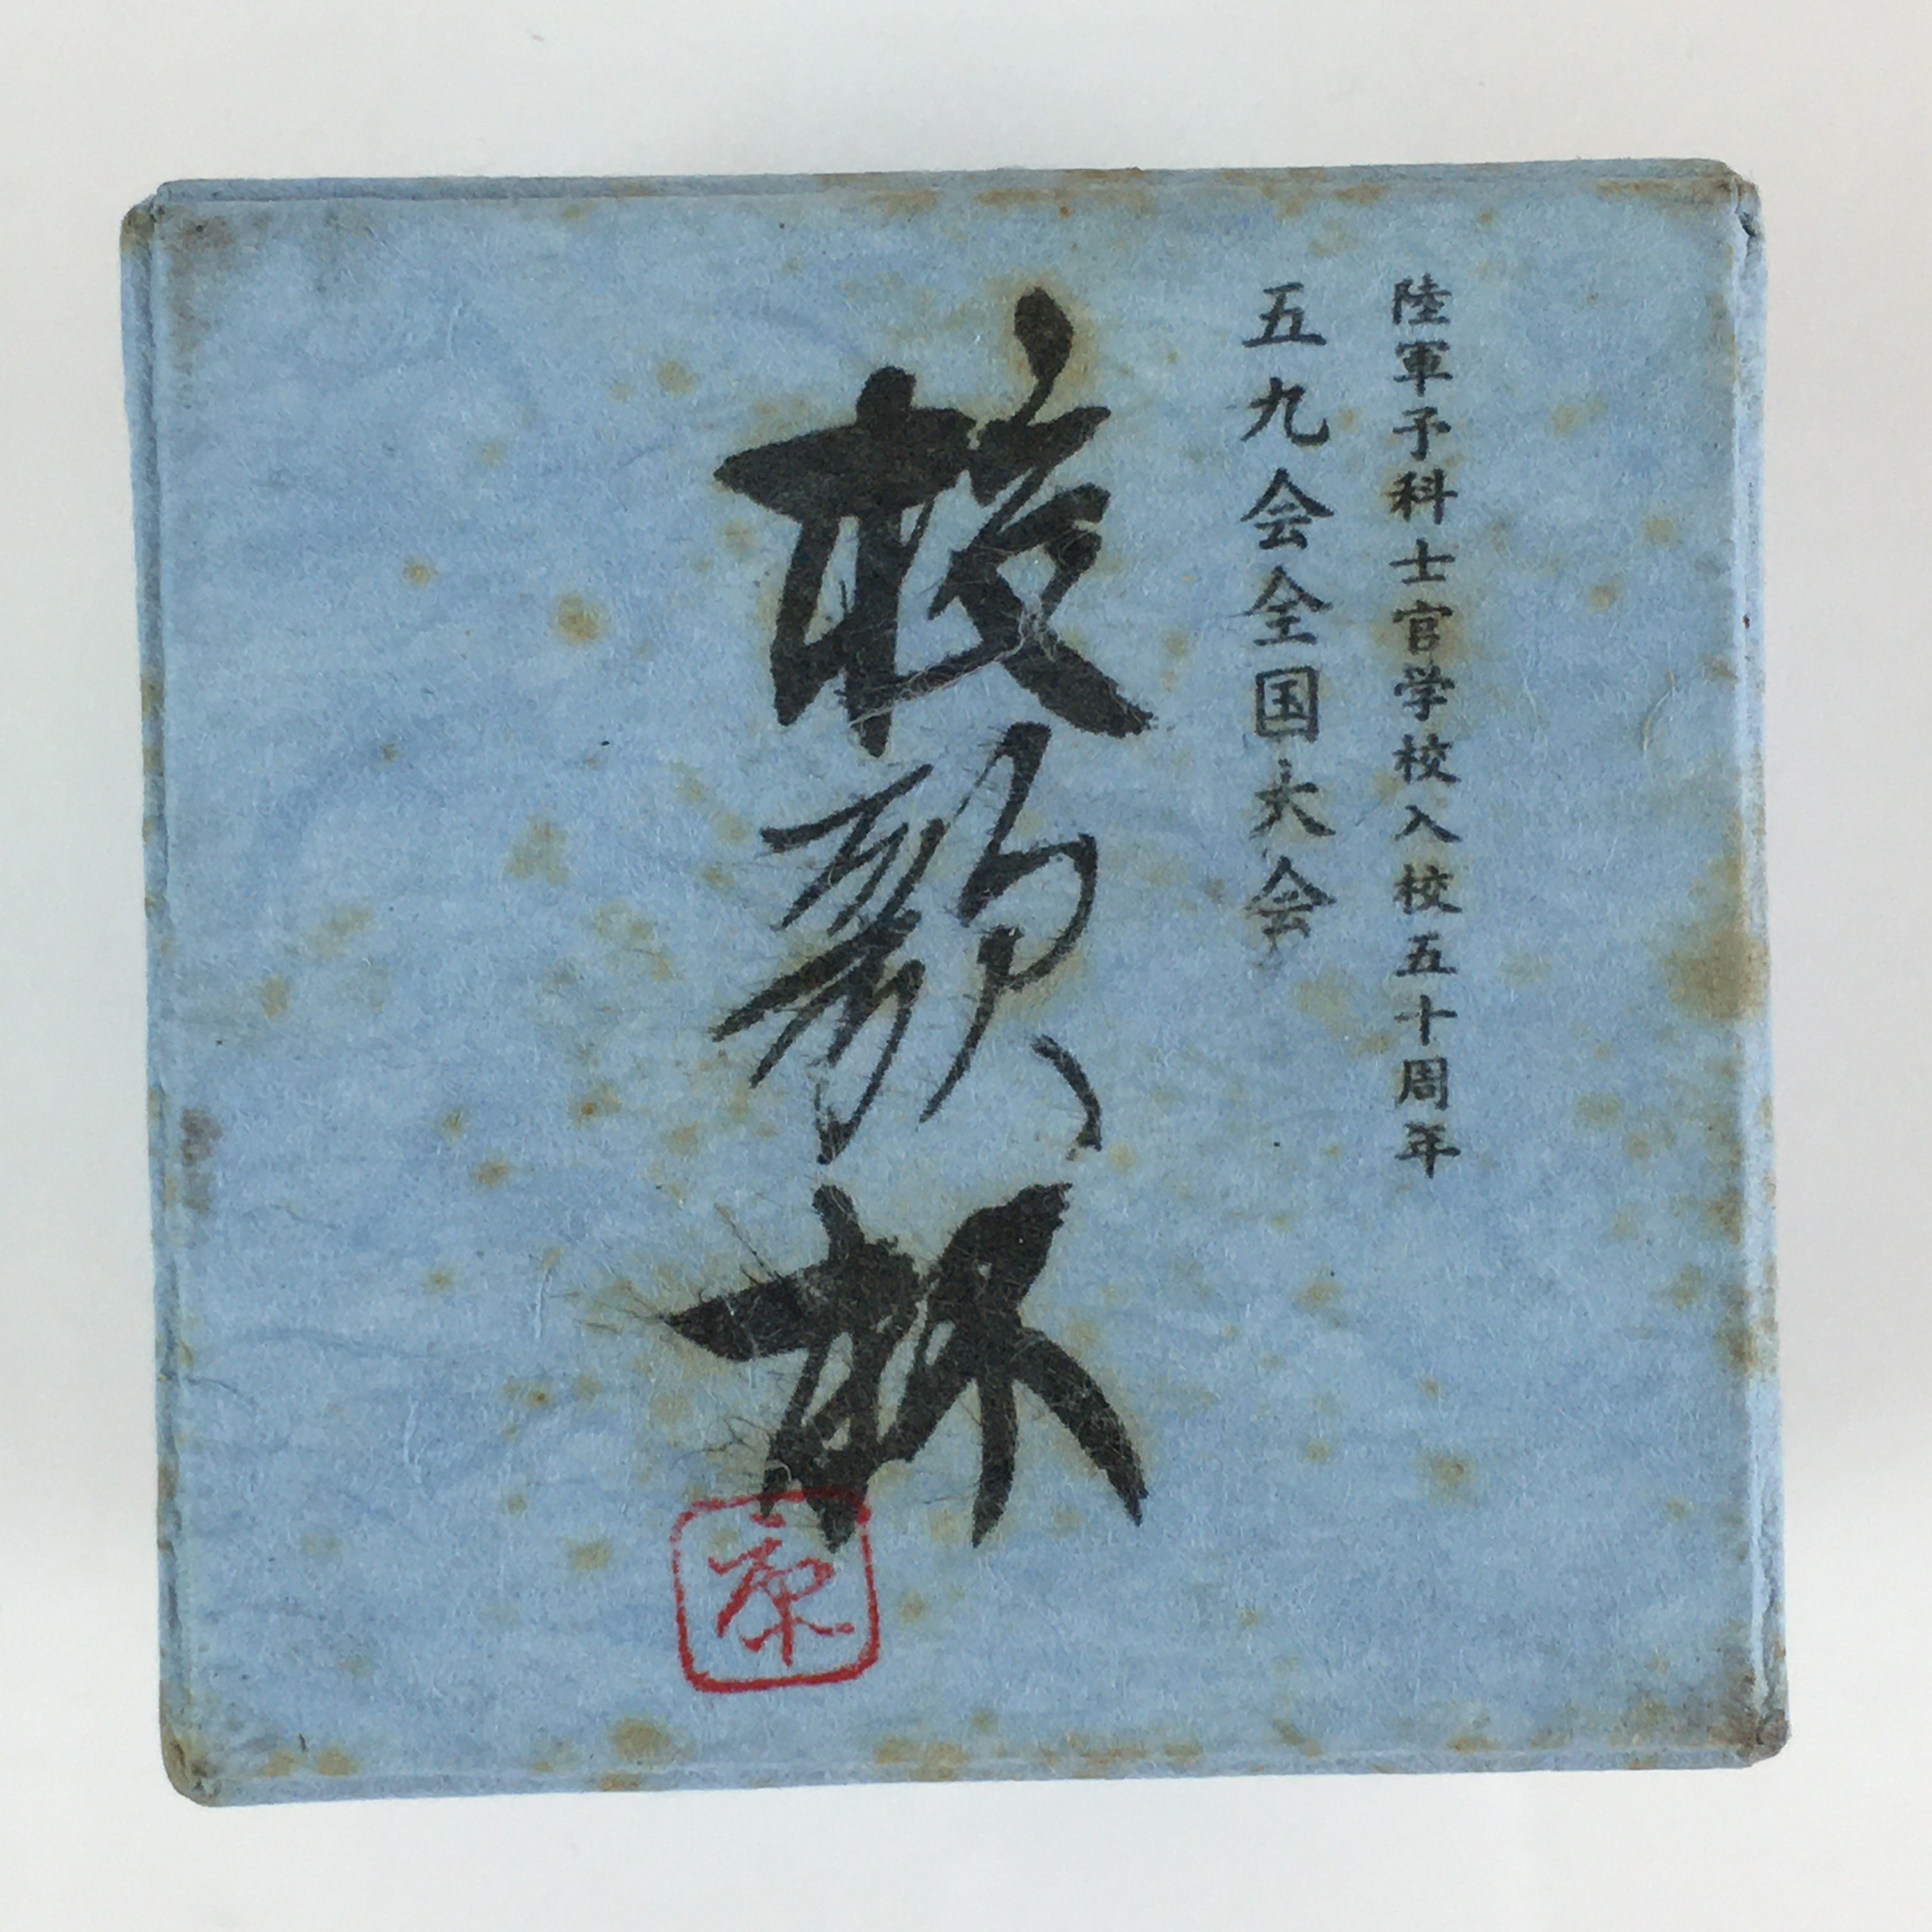 Japanese Porcelain Sake Cup Vtg Boxed Japanese Army Ochiko Guinomi PX626